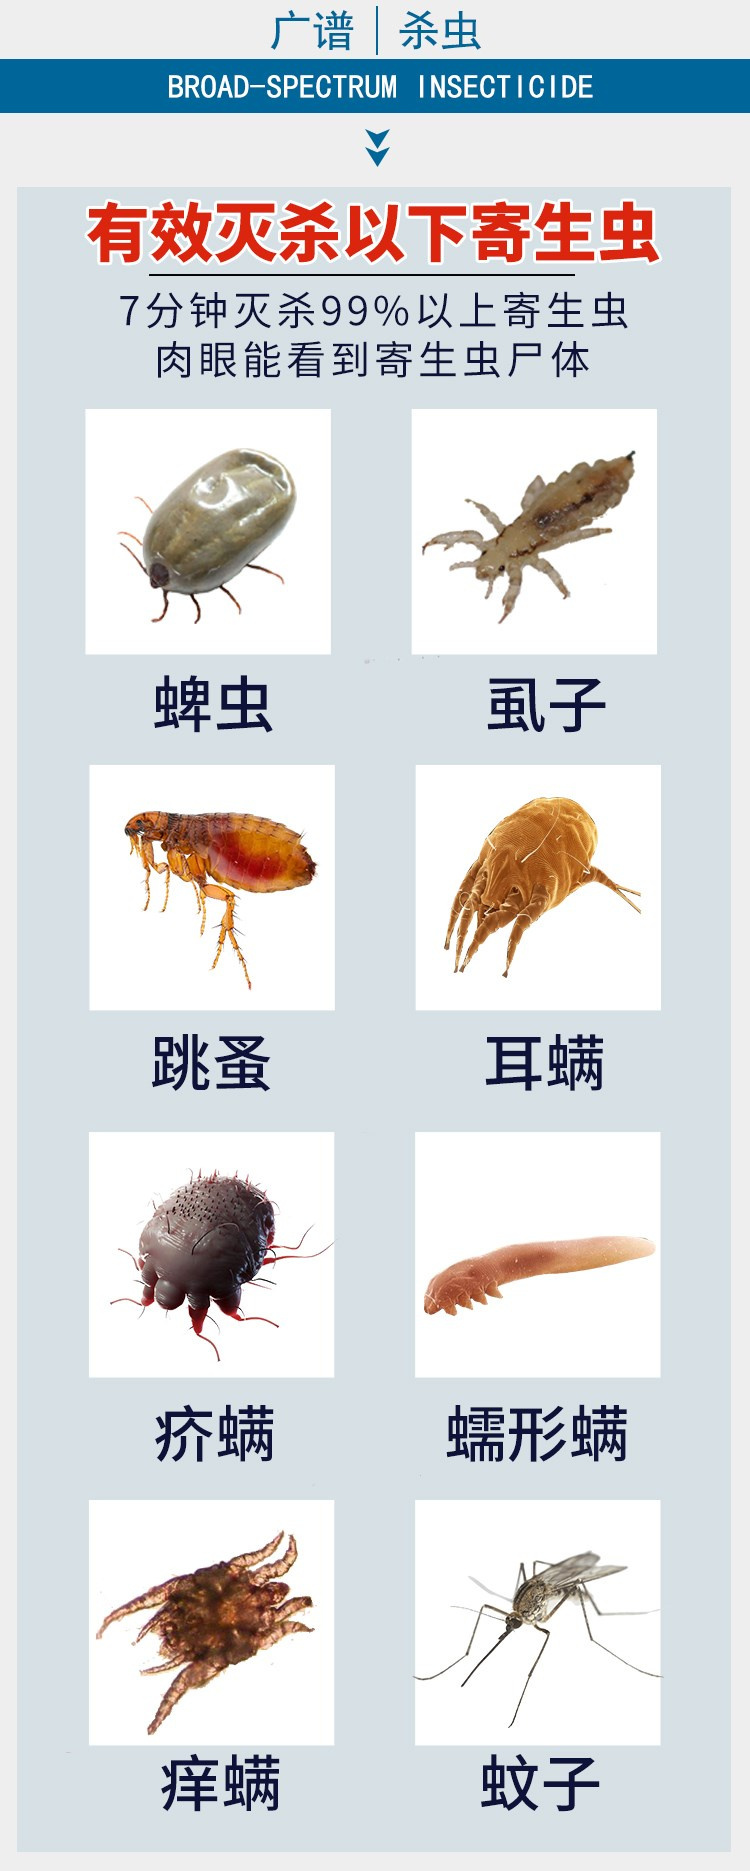 Ngoài 灵, ngoài Lai Ling còn bọ cạp ngoài bọ ve, bọ chét, mèo và chó, thú cưng tắm thuốc, giun ngoài, chó - Cat / Dog Medical Supplies